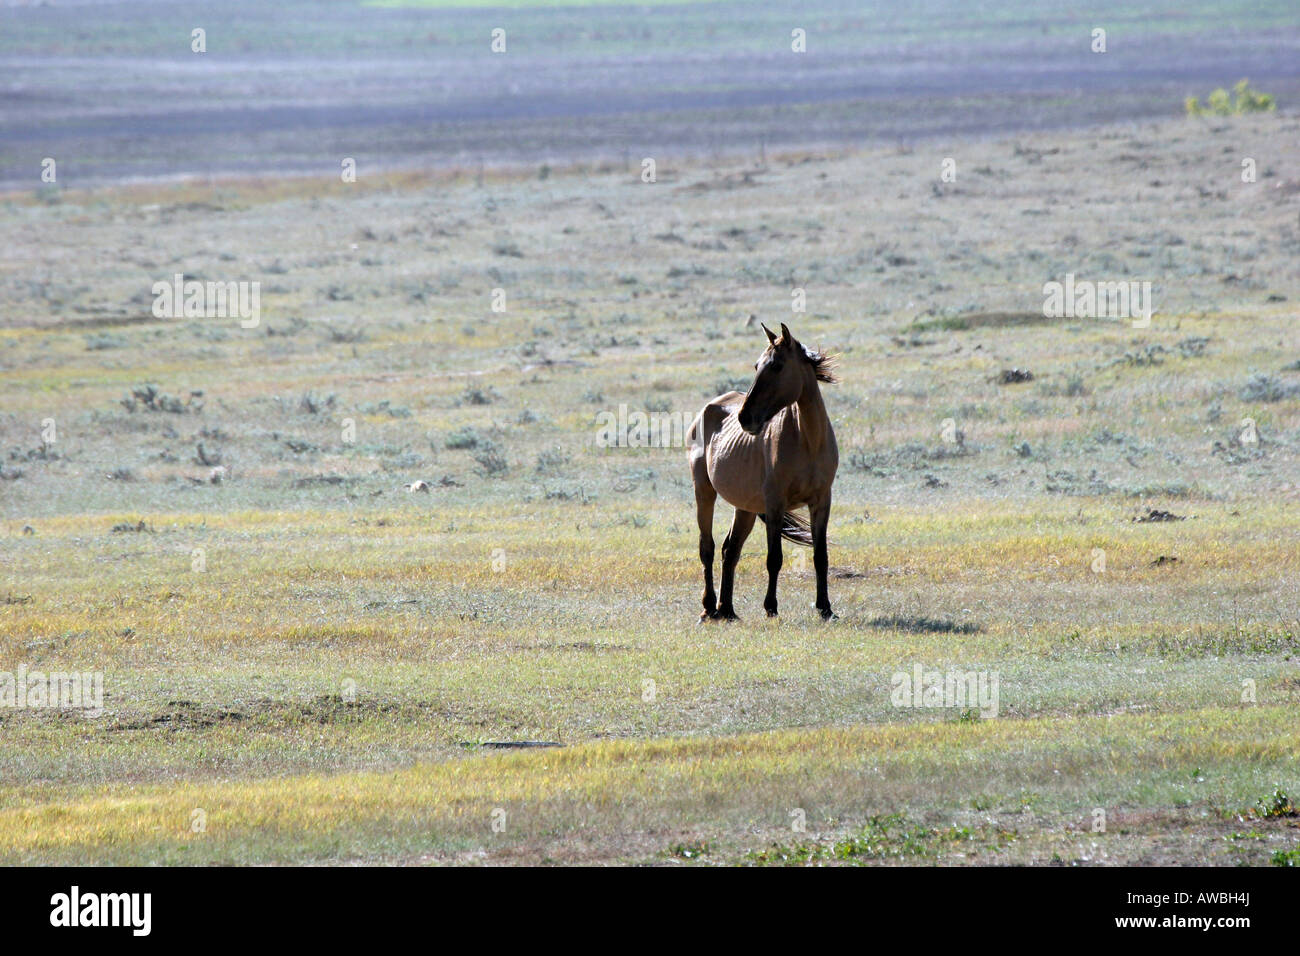 Wild Horse on the prairie of South Dakota Stock Photo - Alamy